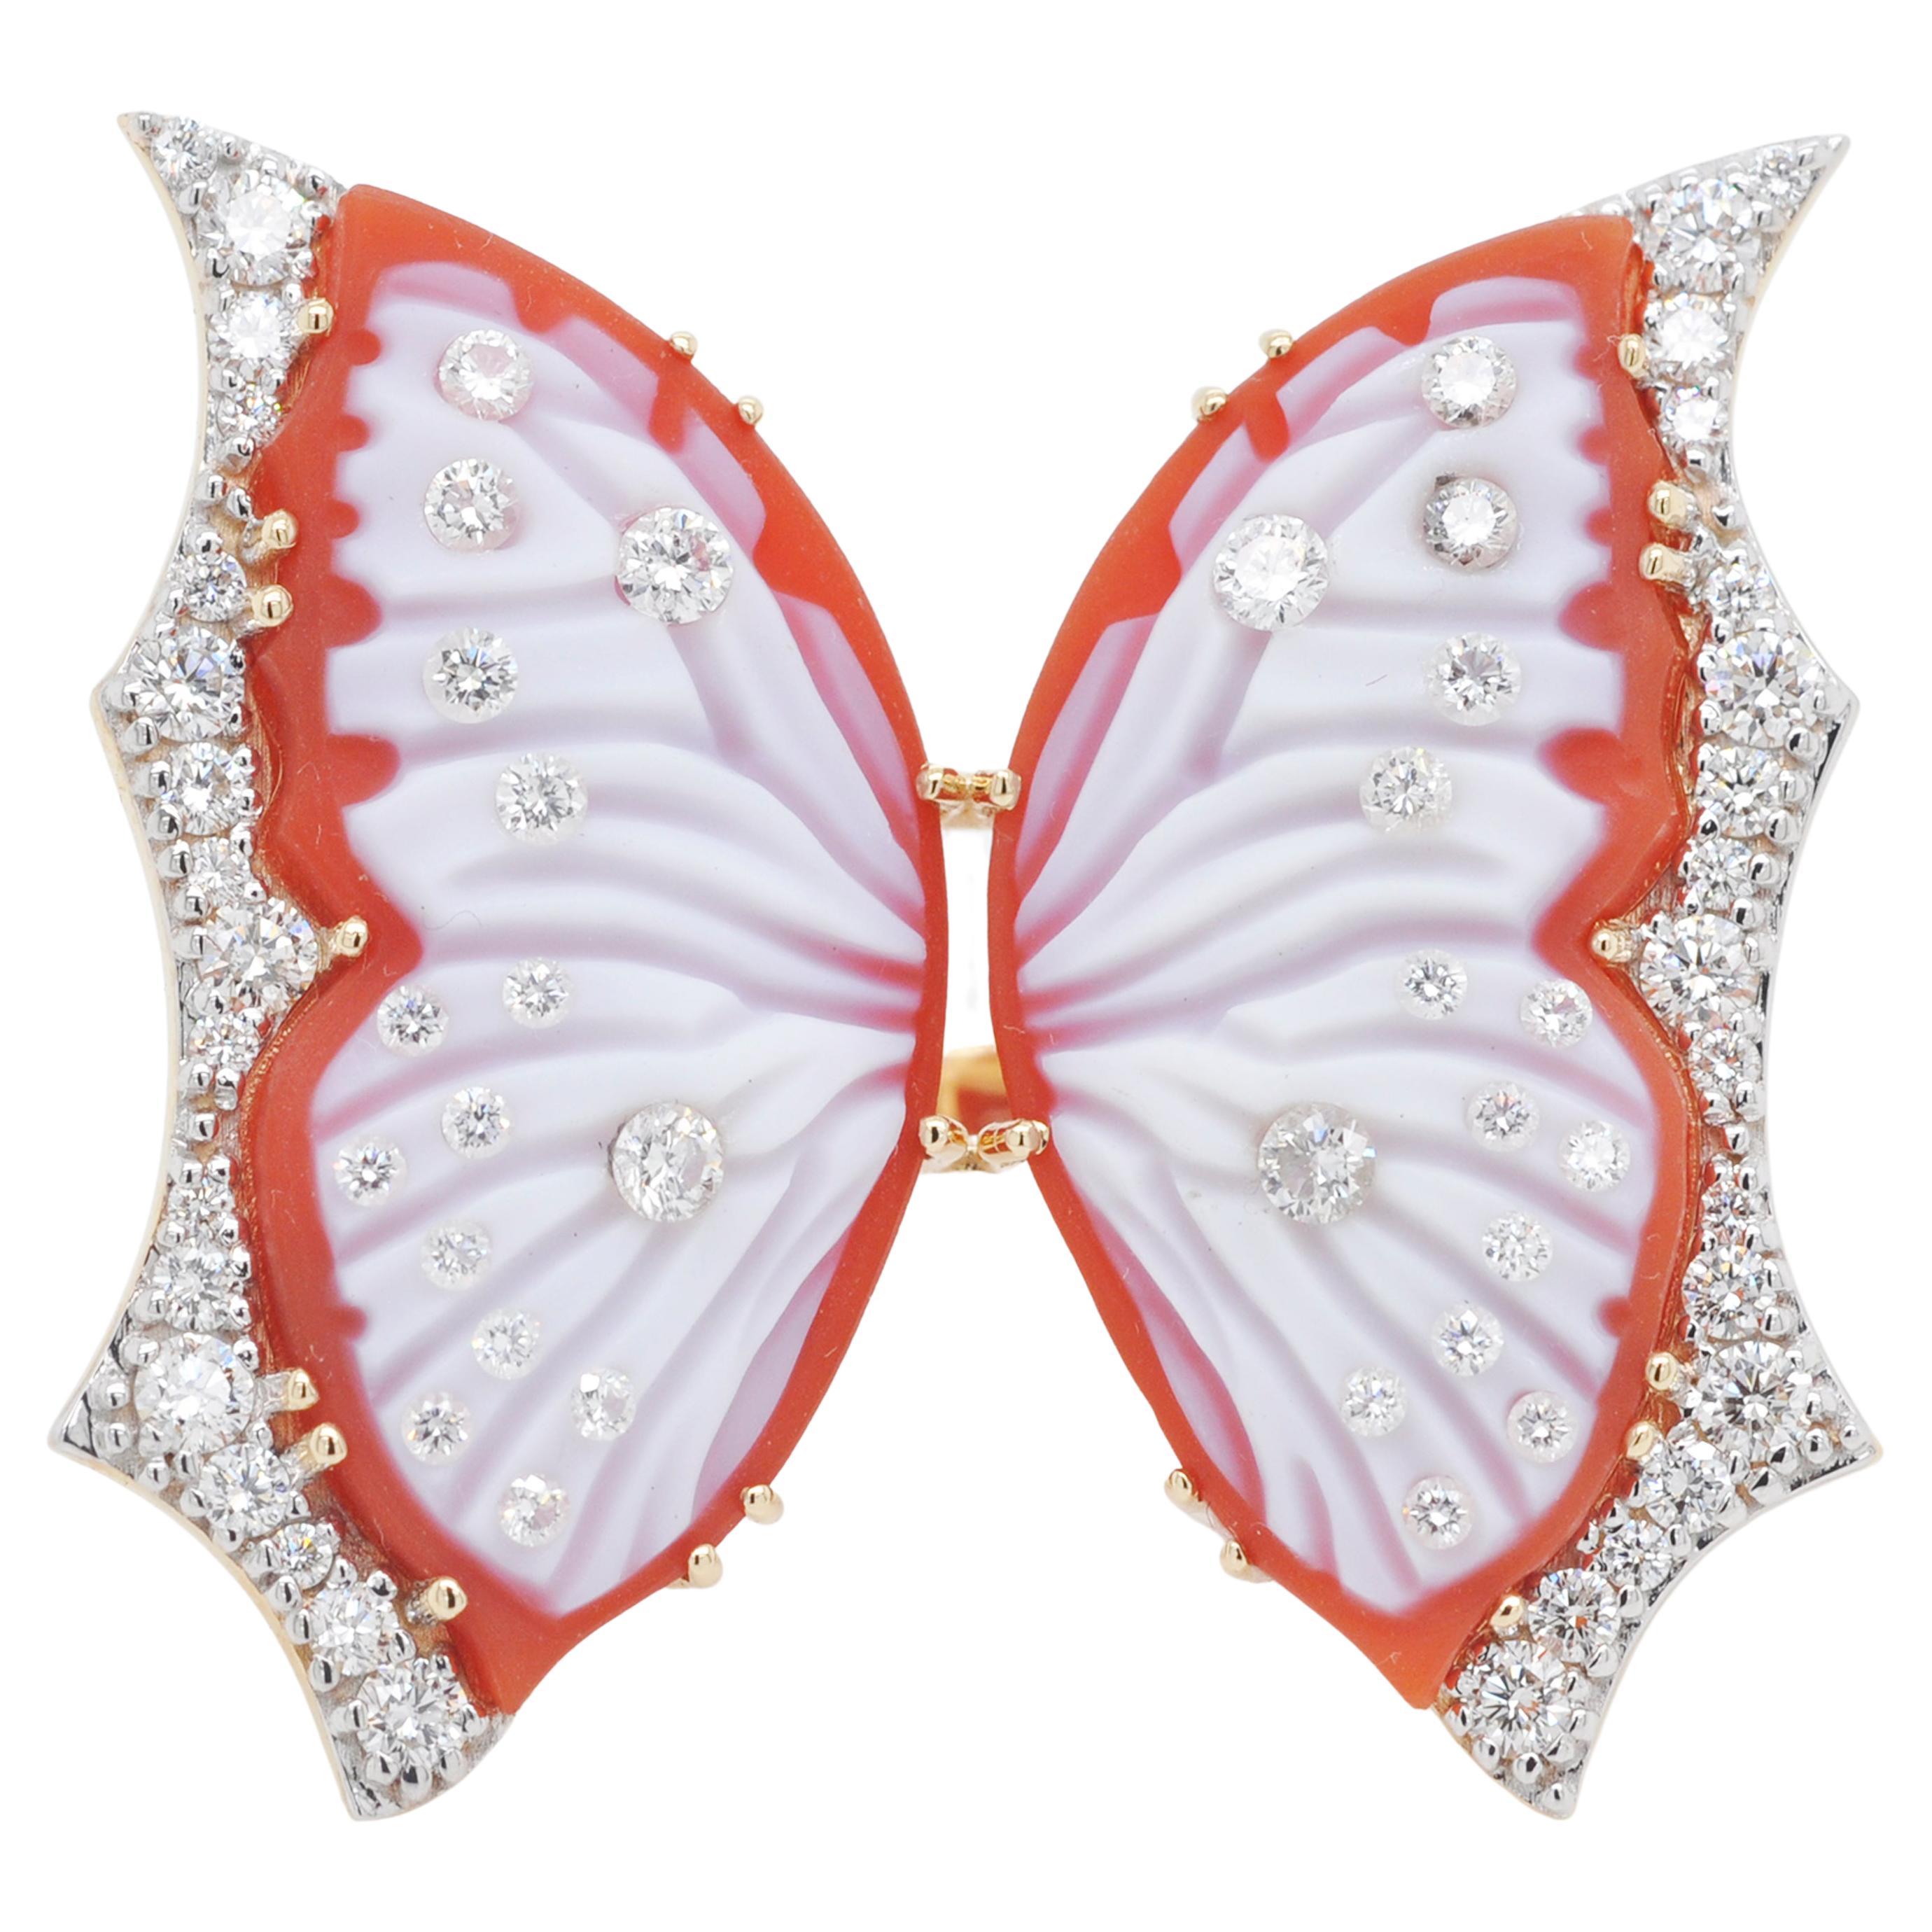 Bague cocktail contemporaine en or 18 carats avec agate rouge, papillons et diamants sculptés à la main